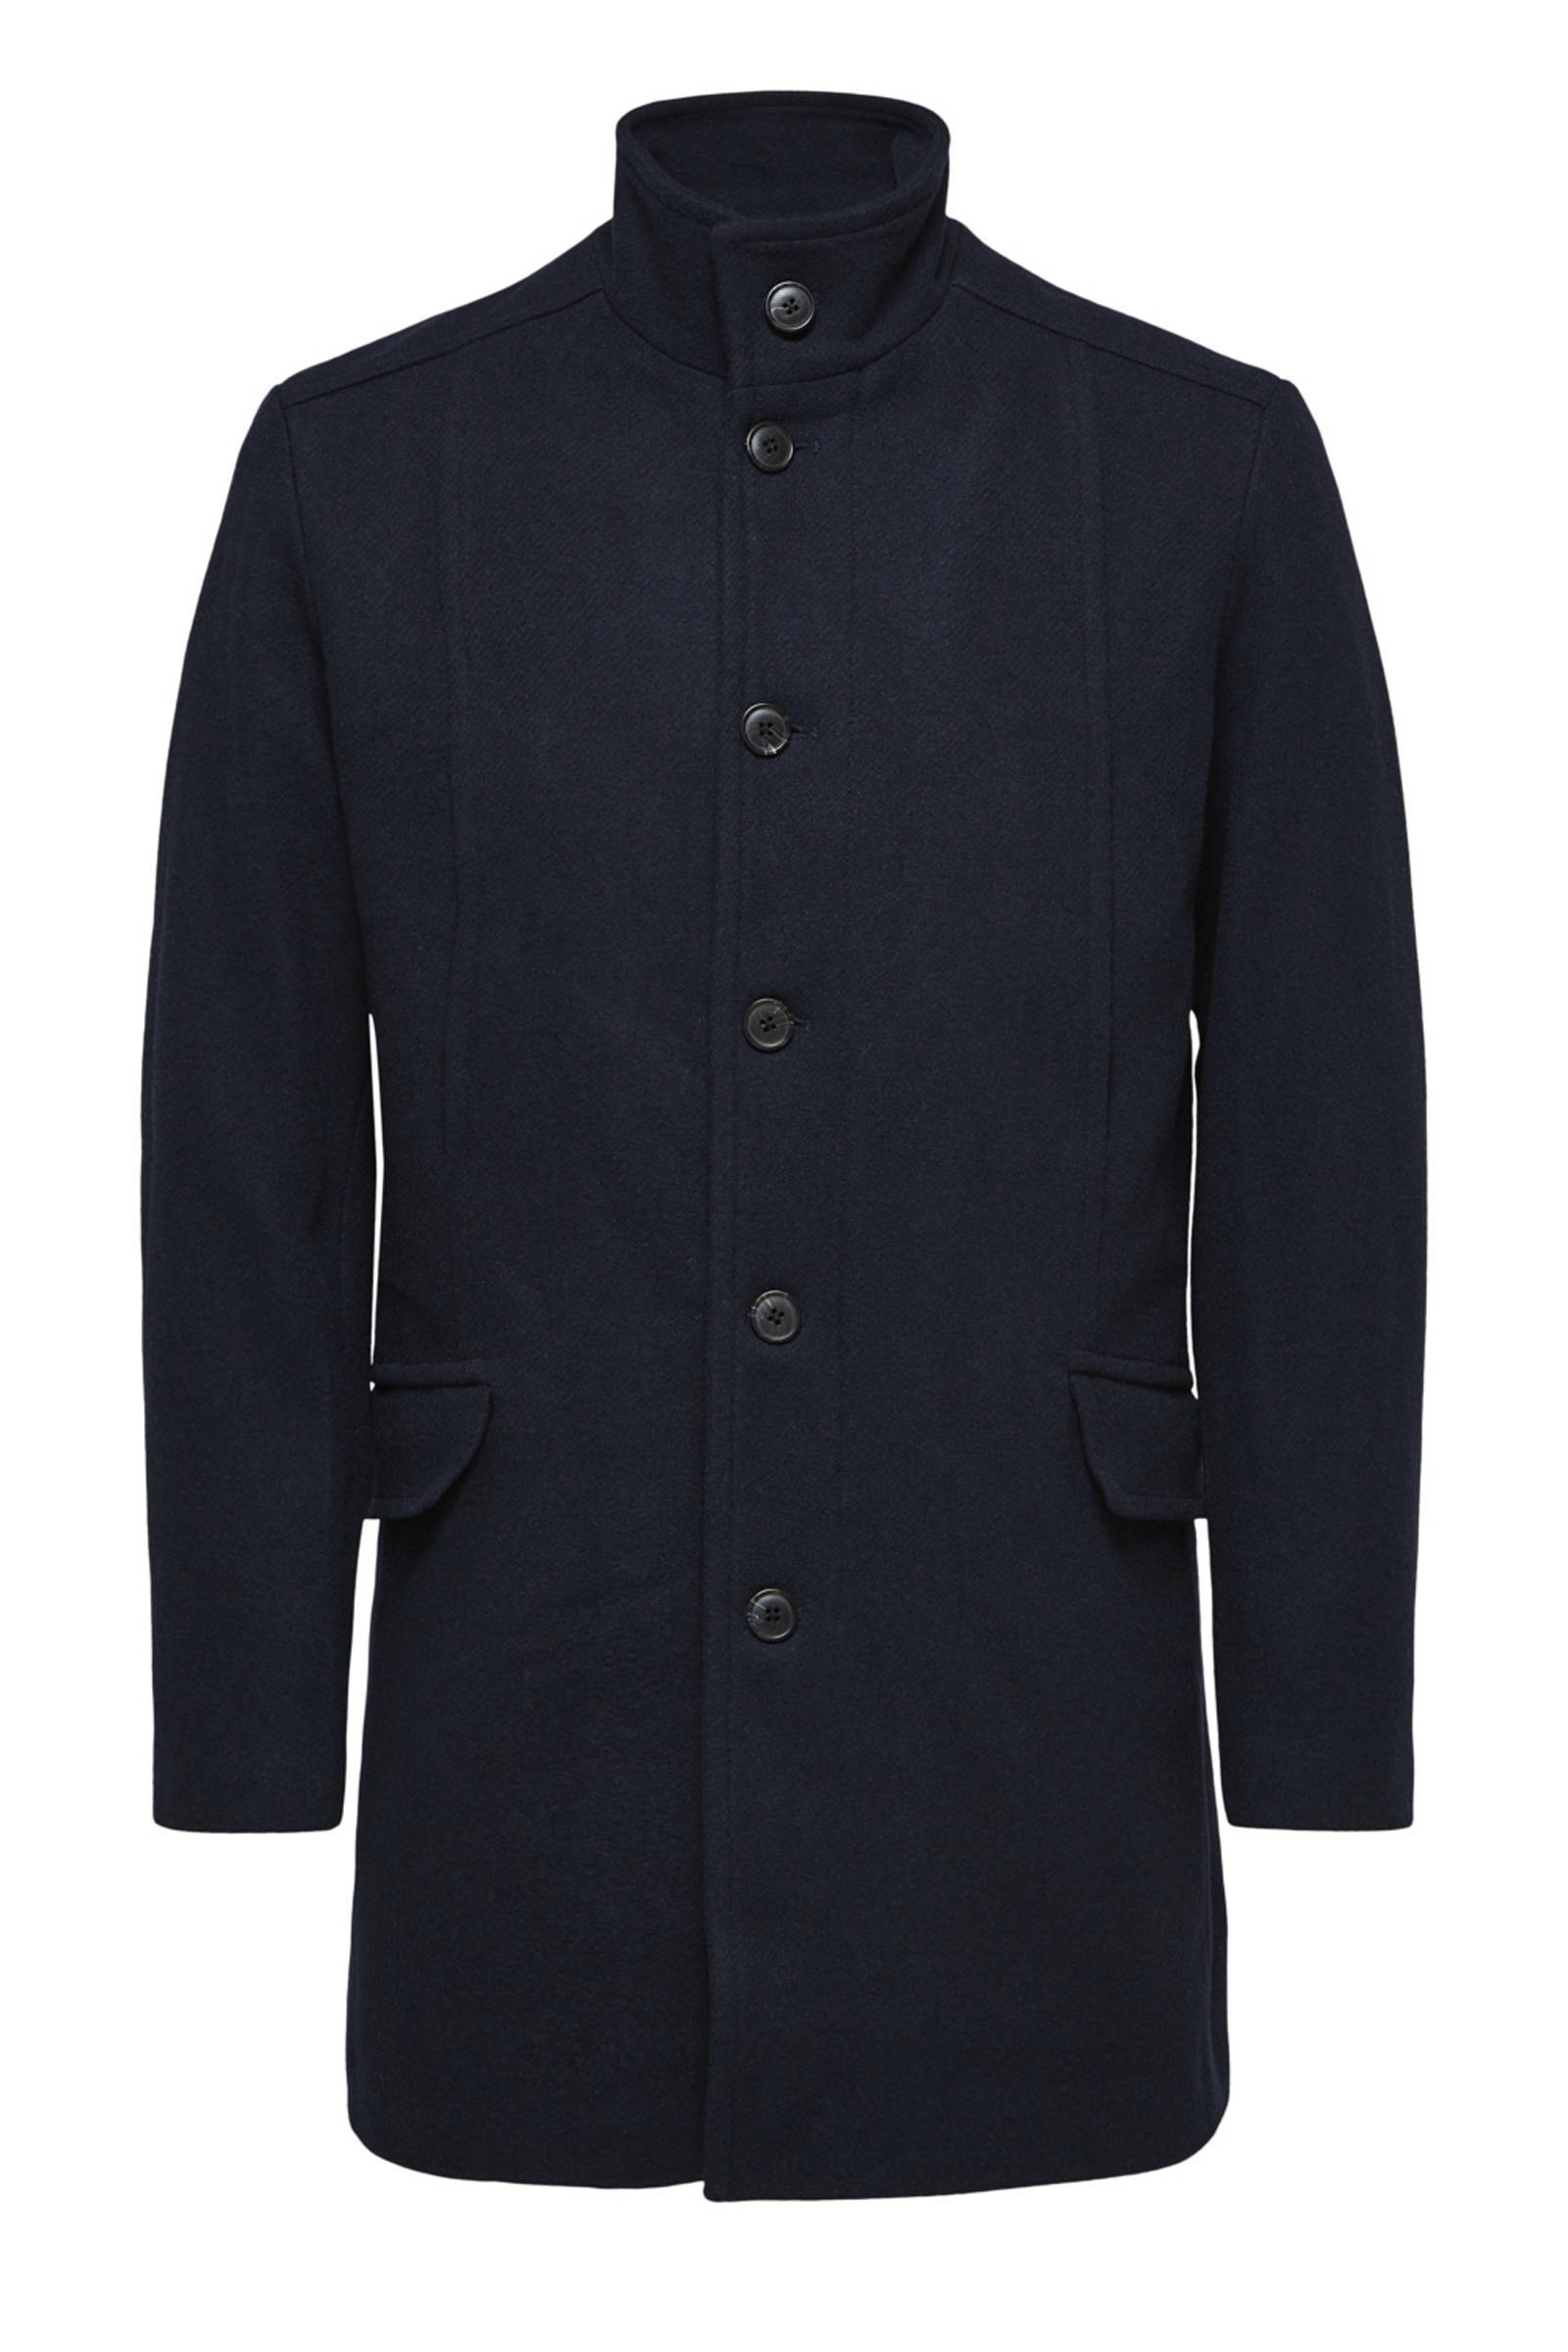 SELECTED HOMME jas met wol donkerblauw online kopen